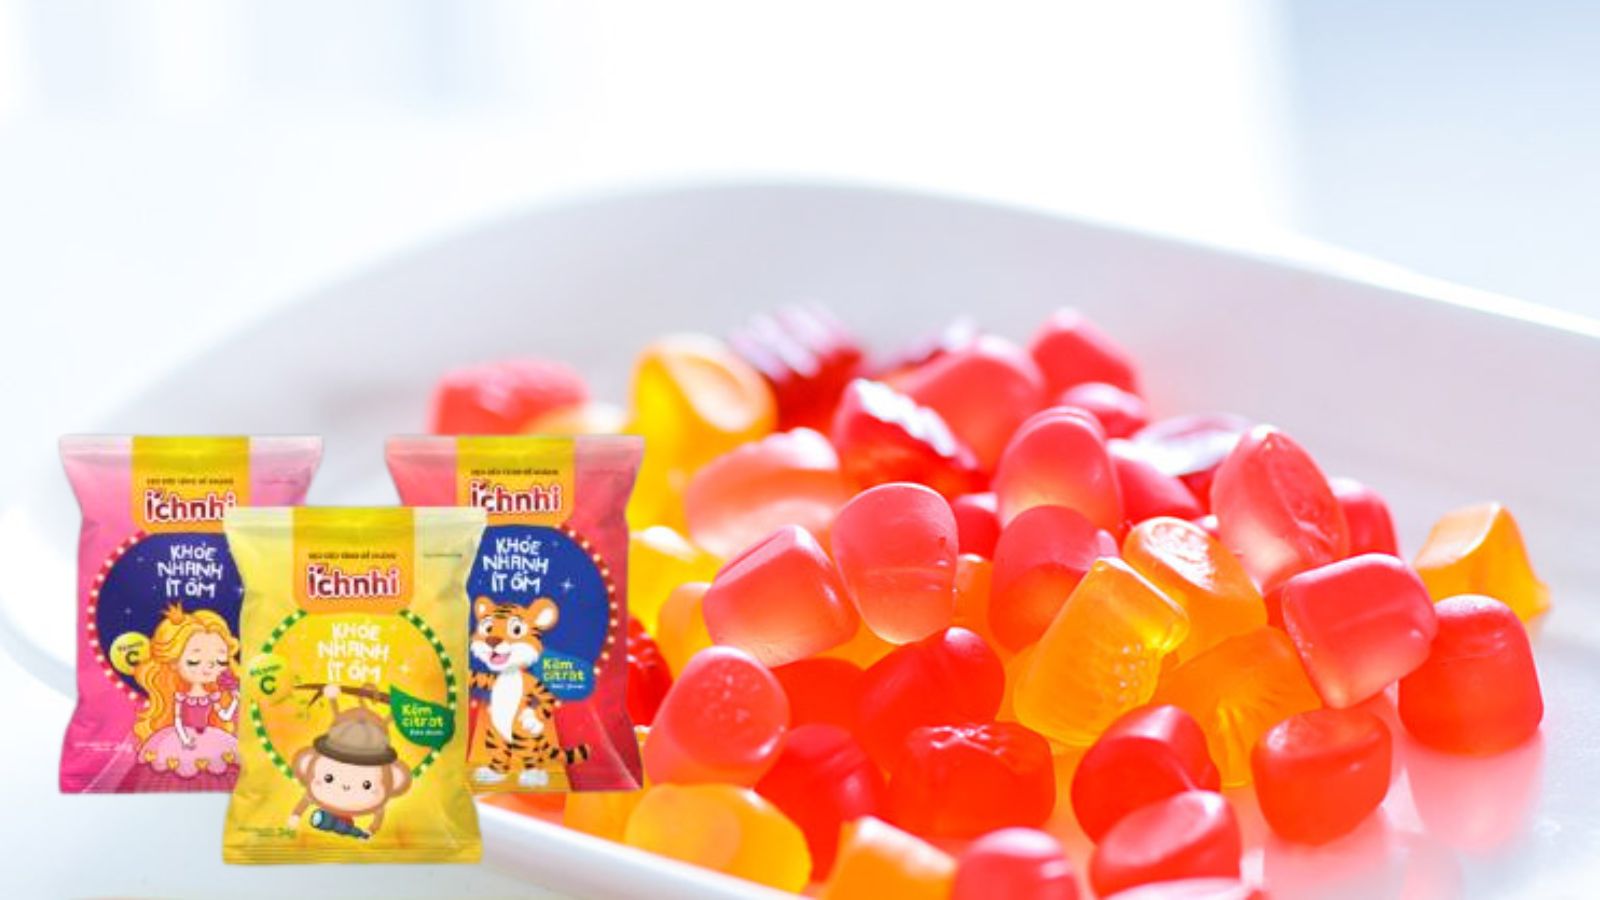 Kẹo dẻo Ích Nhi cung cấp vitamin C cho bé phát triển khỏe mạnh